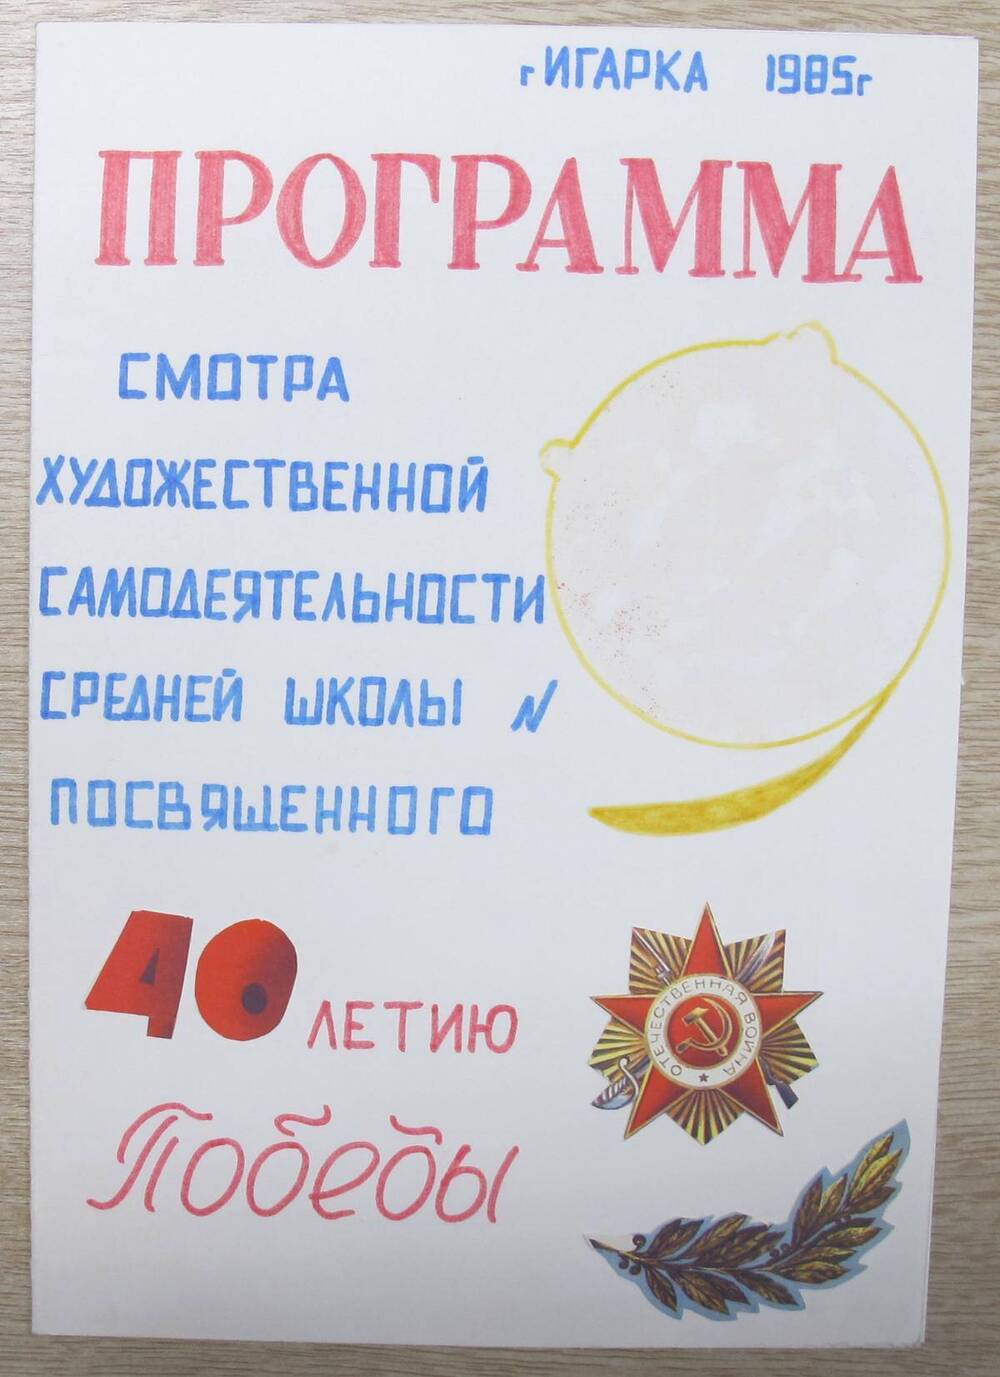 Программа смотра художественной самодеятельности средней школы № 9, посвященного 40-летию Победы.